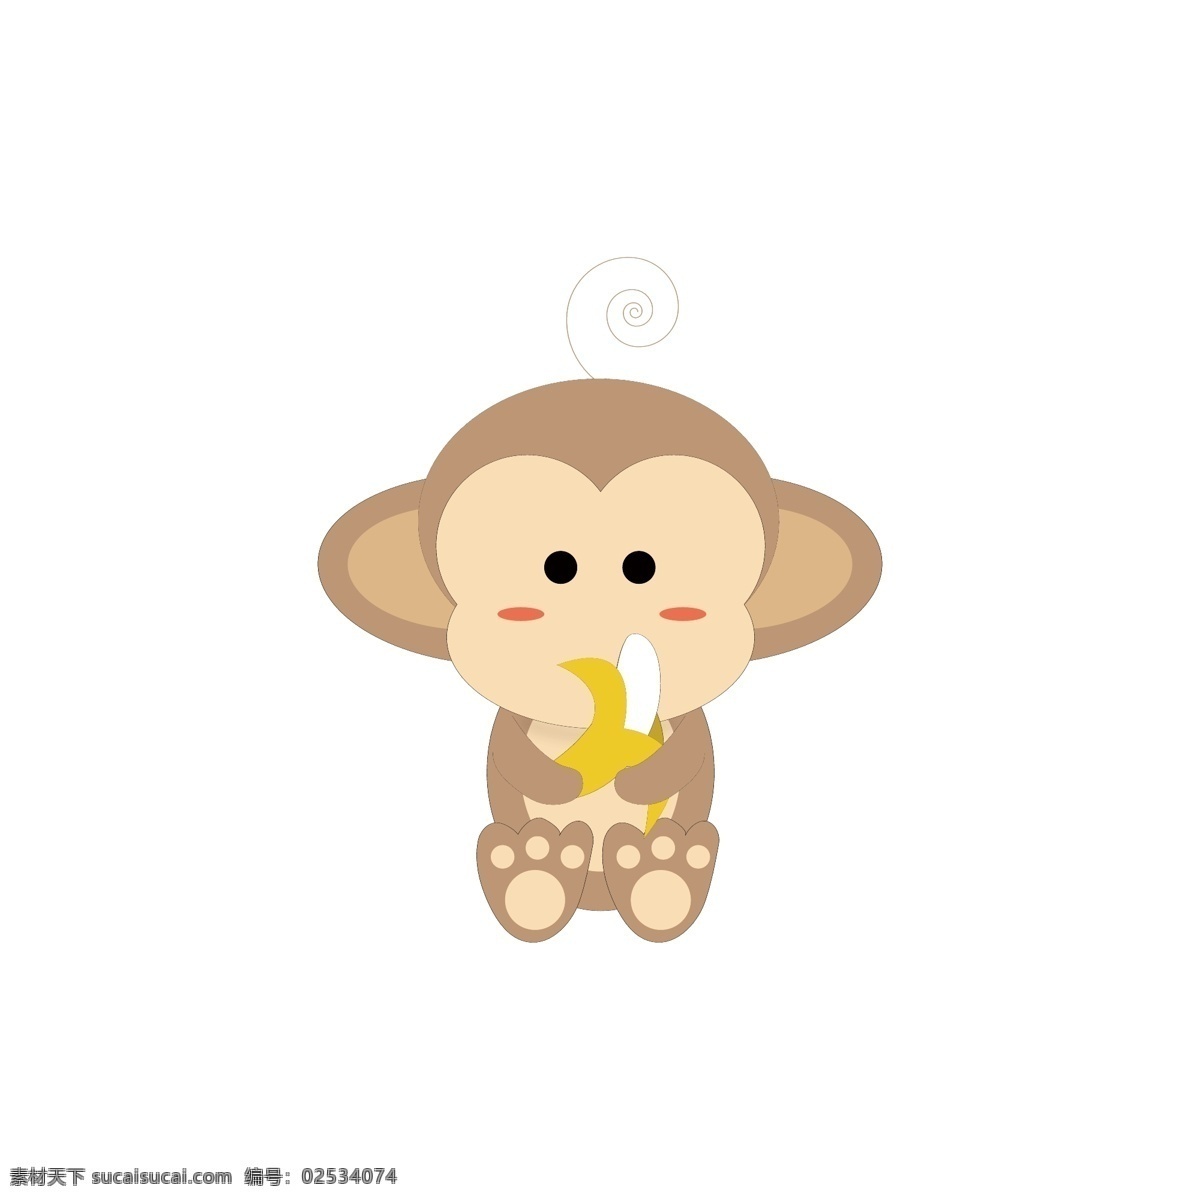 卡通 猴子 矢量 吃 香蕉 可爱 小 小猴子吃香蕉 卡通手绘矢量 动物 大头